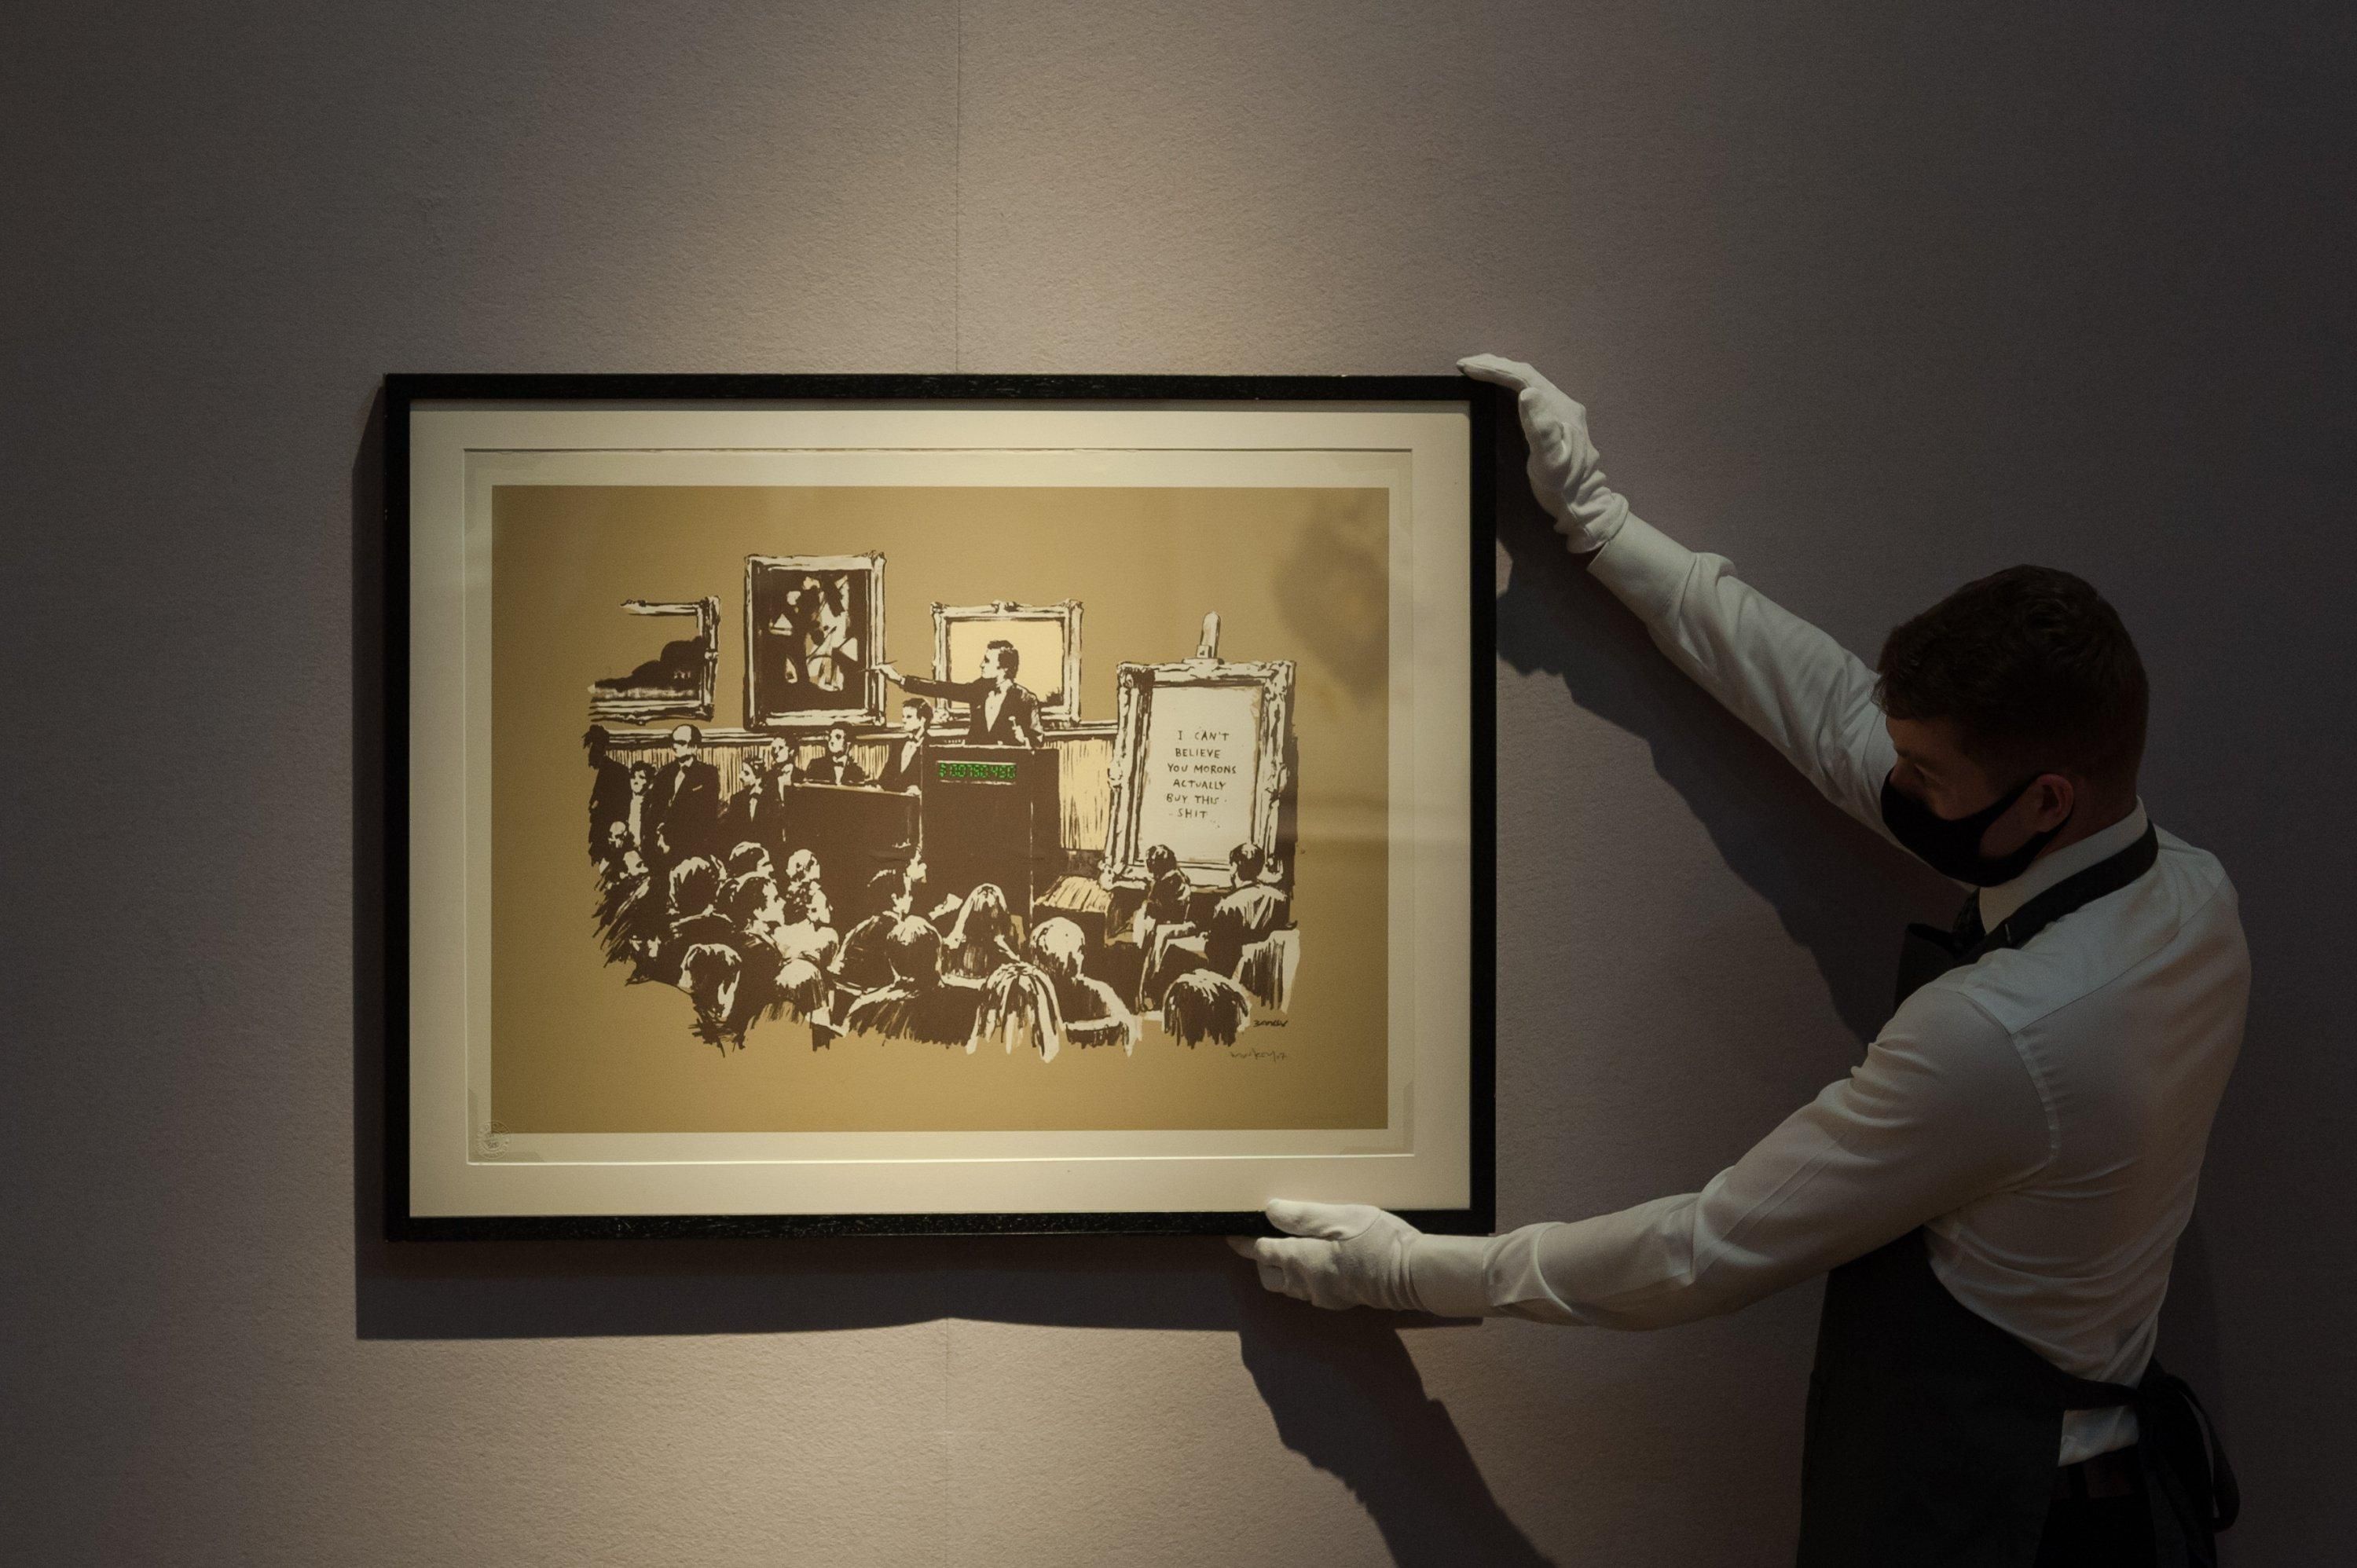 Сожженную работу Banksy превратили в токен и продали за 380 тыс. долларов